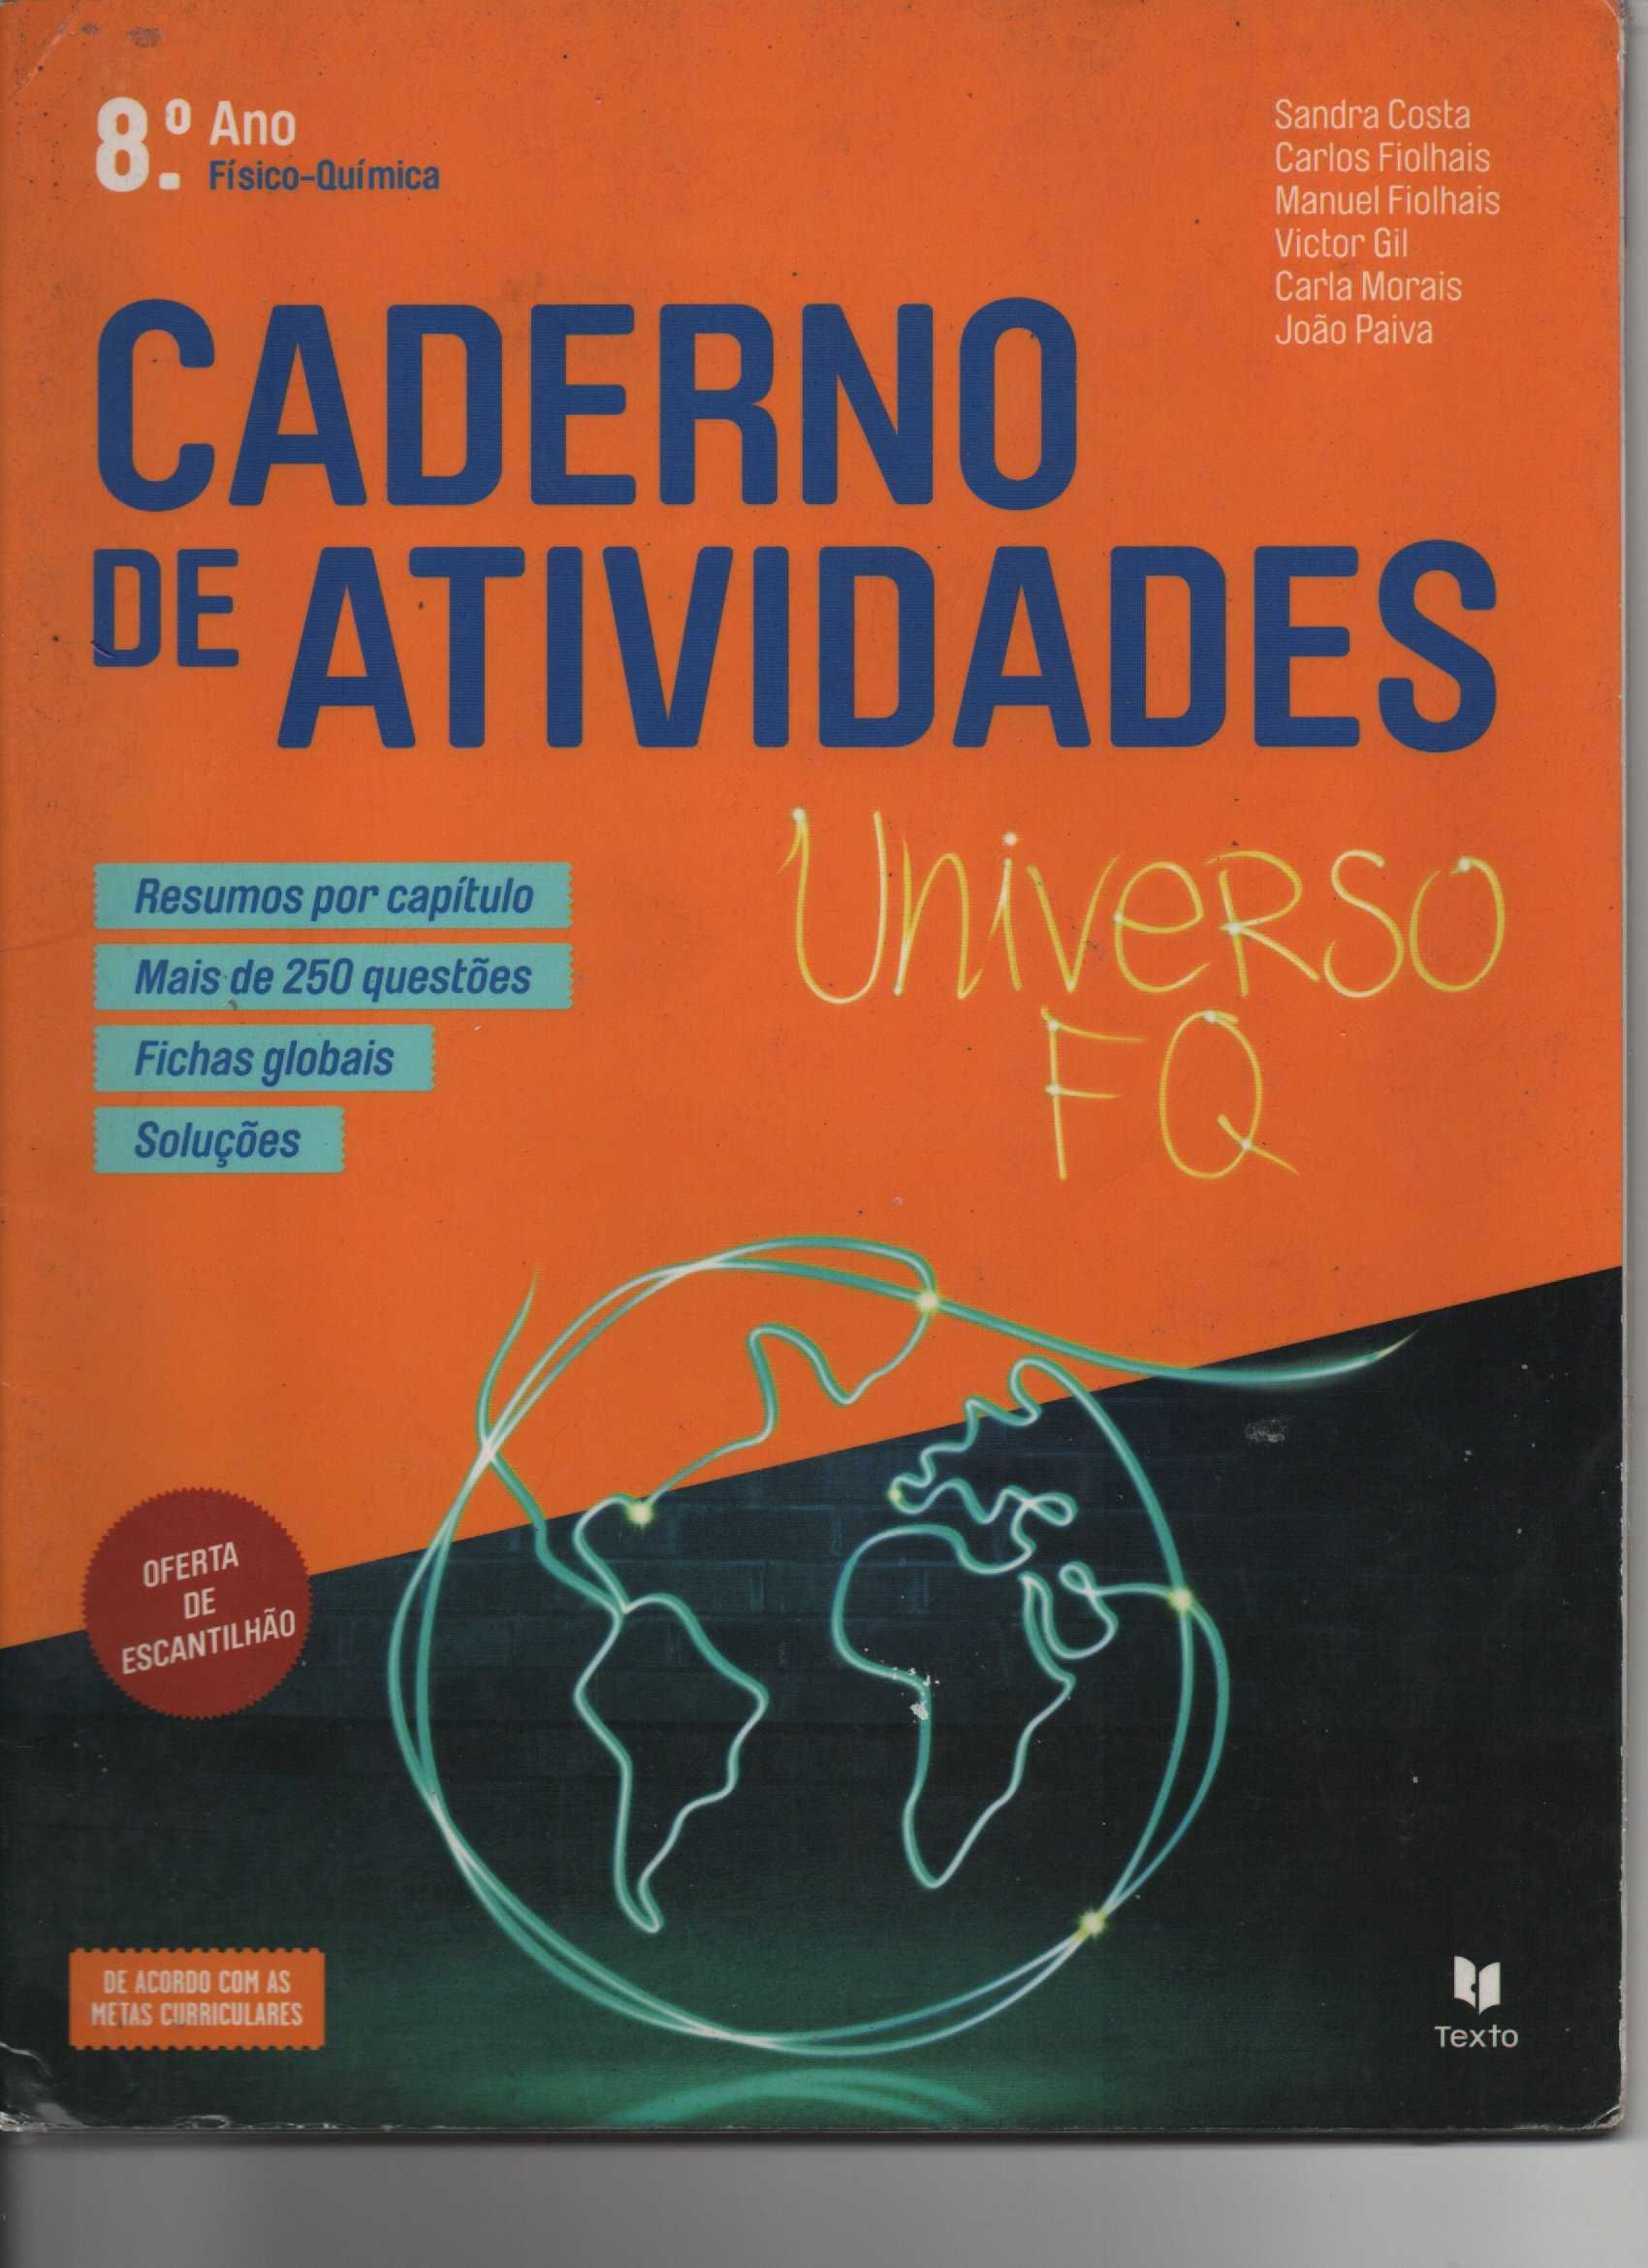 Universo FQ 8º ano-Caderno de atividades